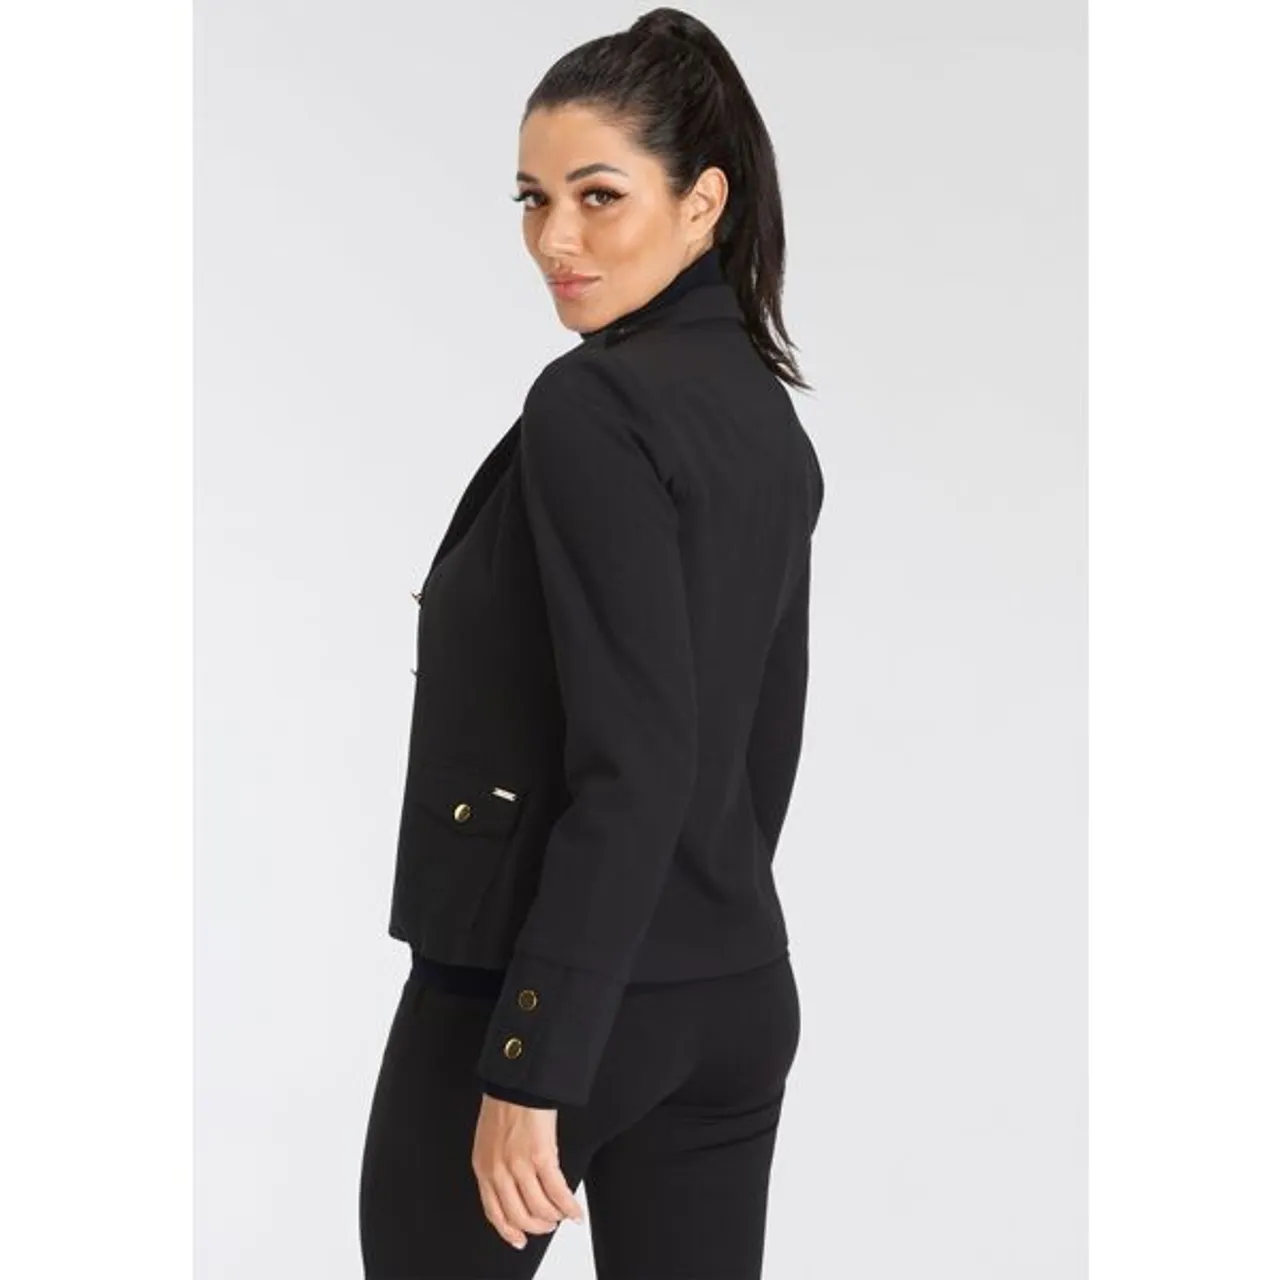 Jerseyblazer BRUNO BANANI Gr. 40, schwarz Damen Blazer im Uniform-Stil NEUE KOLLEKTION